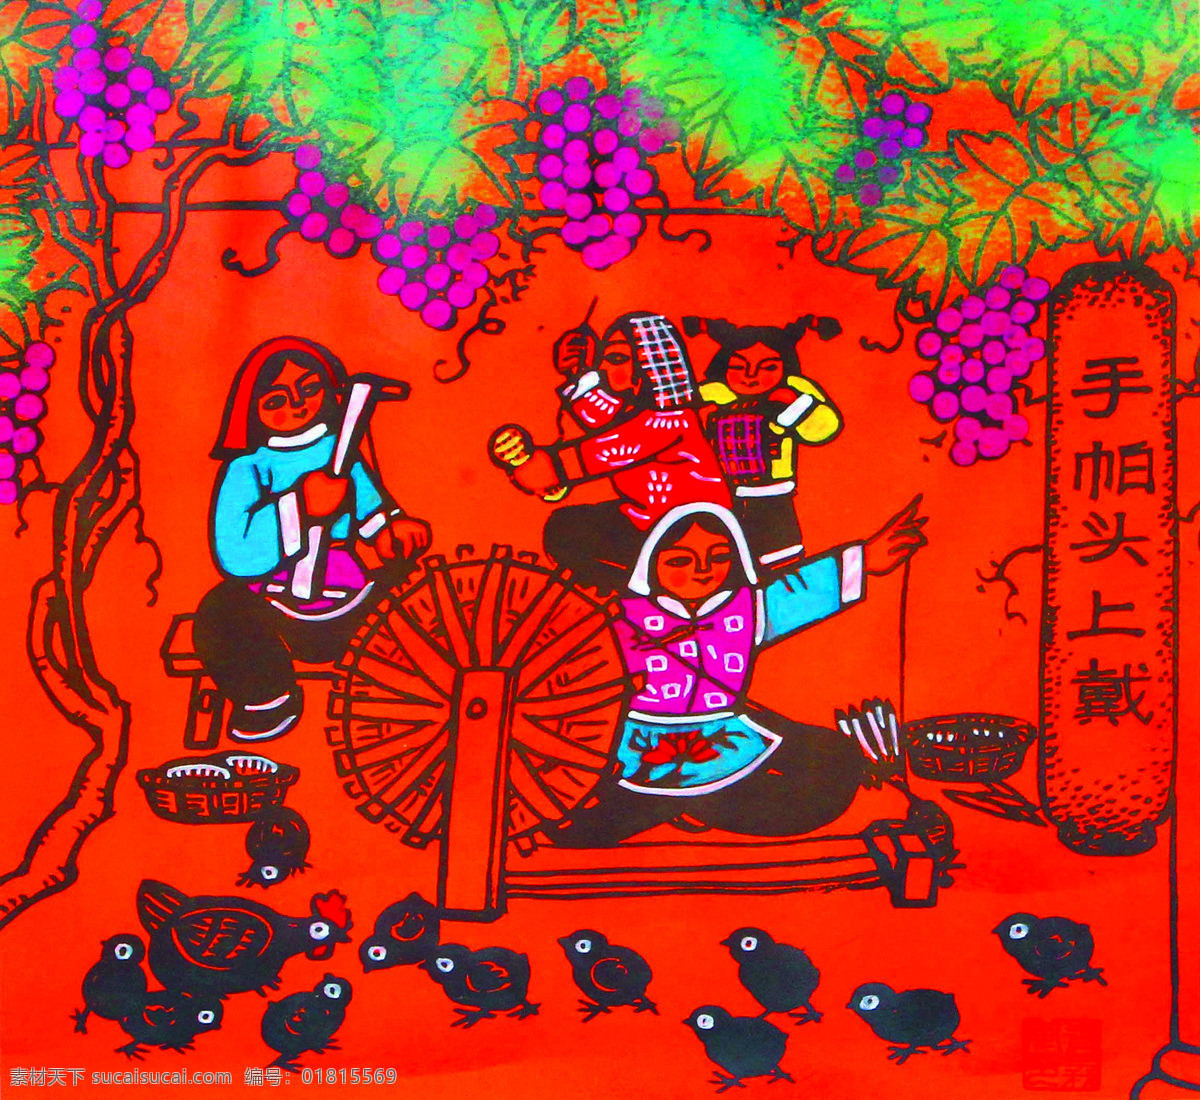 妇女 绘画书法 美术 农家 女人 葡萄 文化艺术 手帕 头上 戴 设计素材 模板下载 手帕头上戴 农民画 装饰画 织布机 鸡群 农民画艺术 中国 作品